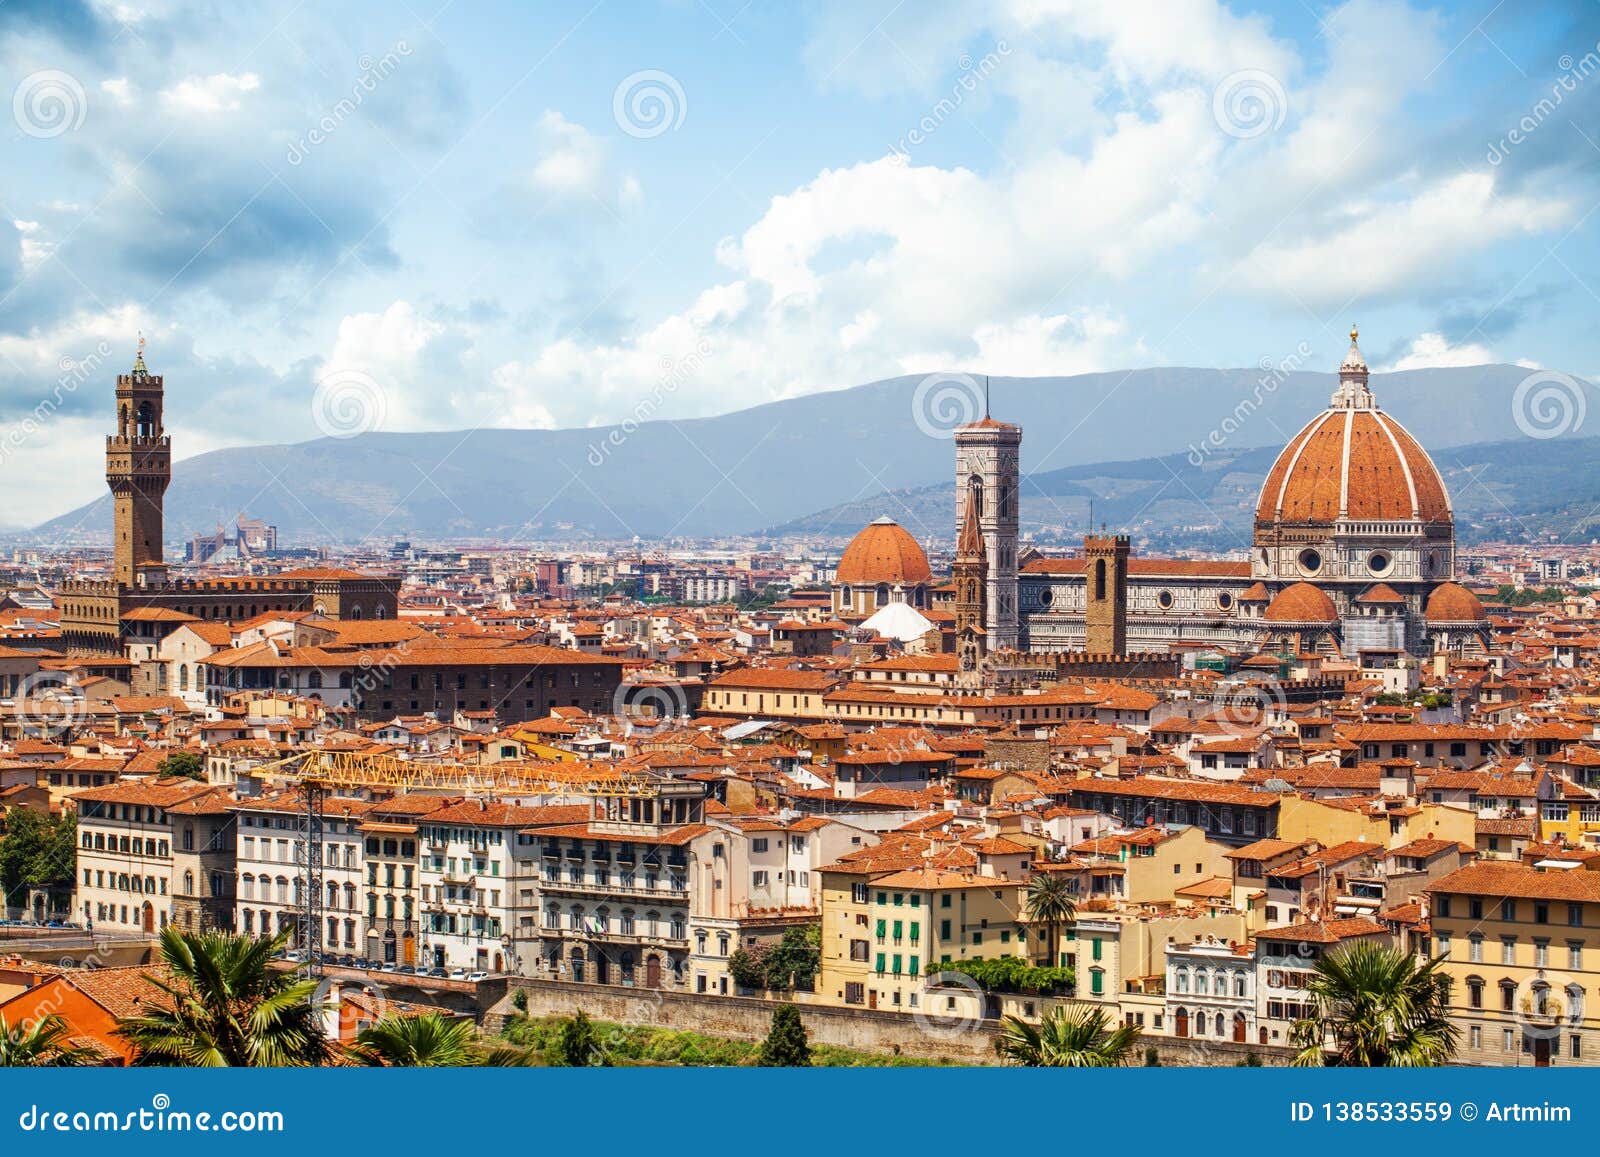 Paisaje de Florencia en Italia con la torre antigua del palacio viejo Palazzo Vecchio, Florence Duomo, di Santa Maria del Fiore de la basílica Señales de Firenze